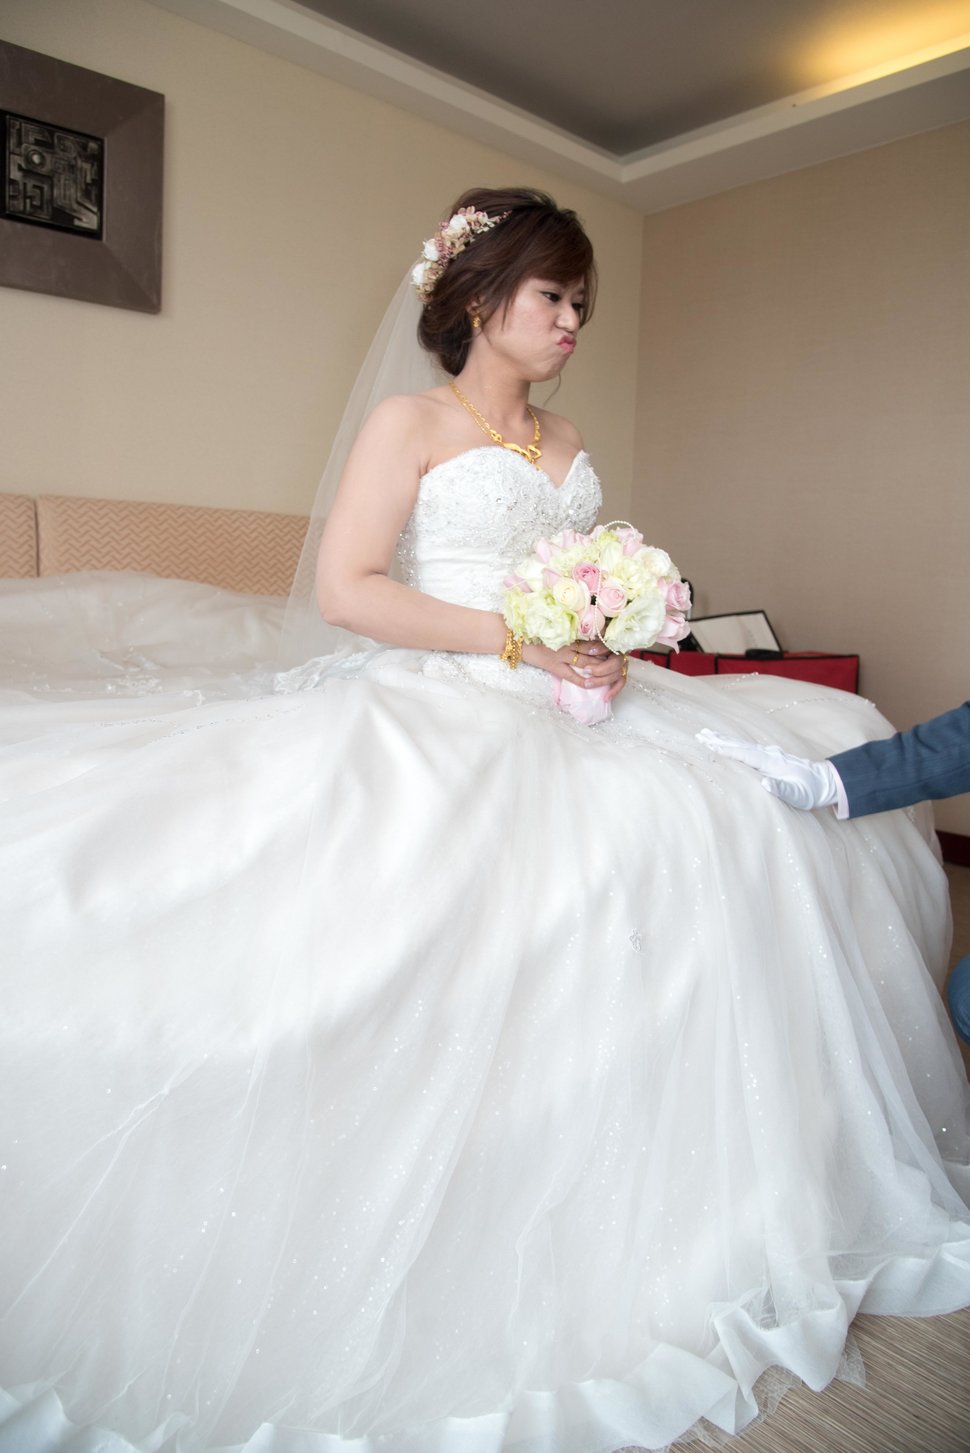 155 - 漢雅婚禮紀錄(婚禮平面攝影)《結婚吧》